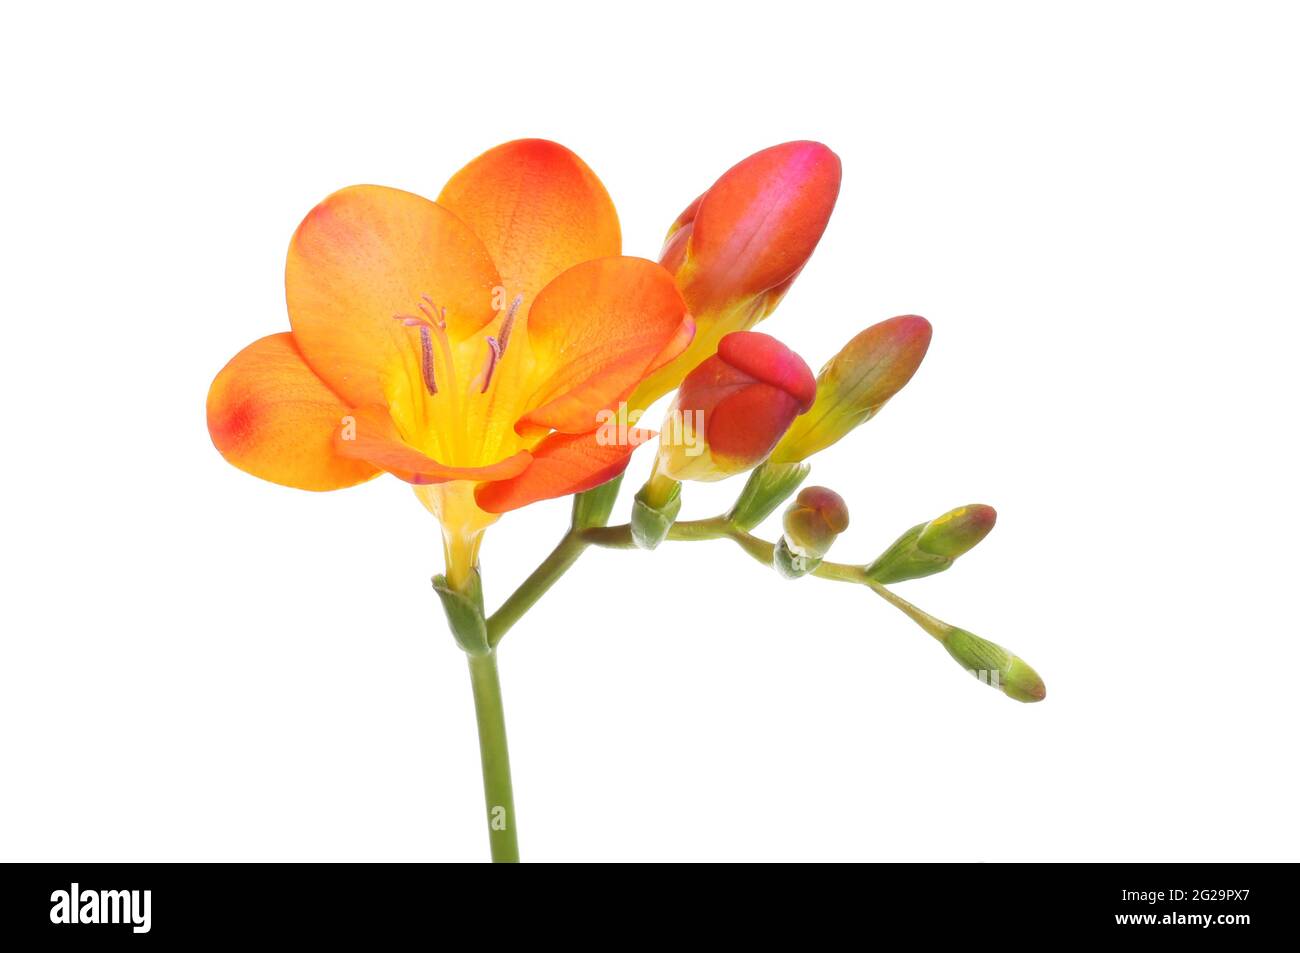 Fleur et bourgeons de freesia orange et jaune isolés contre le blanc Banque D'Images